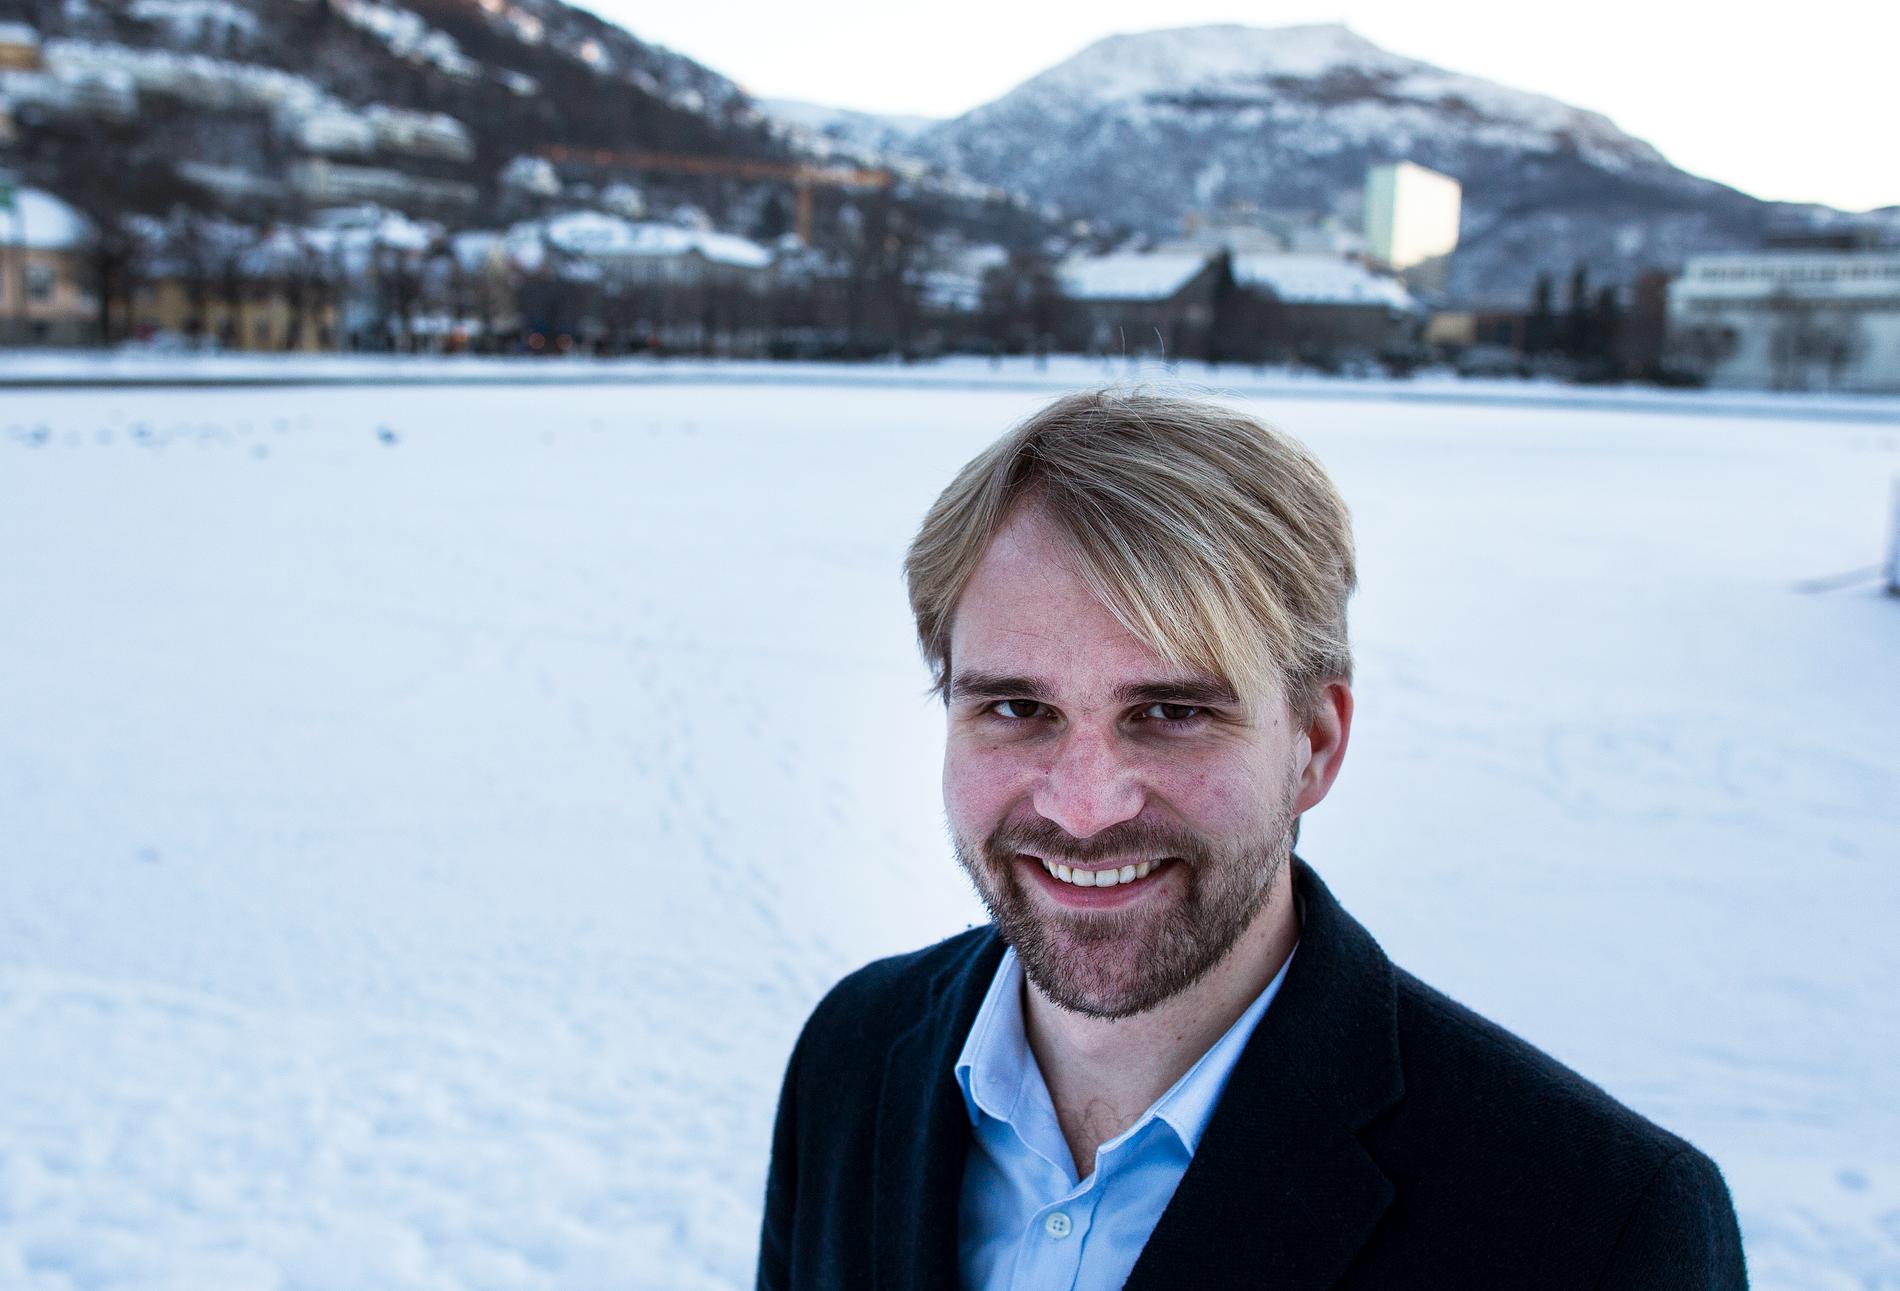 NY LEDER: Roger Valhammer er nyvalgt leder for Arbeiderpartiet i Bergen.